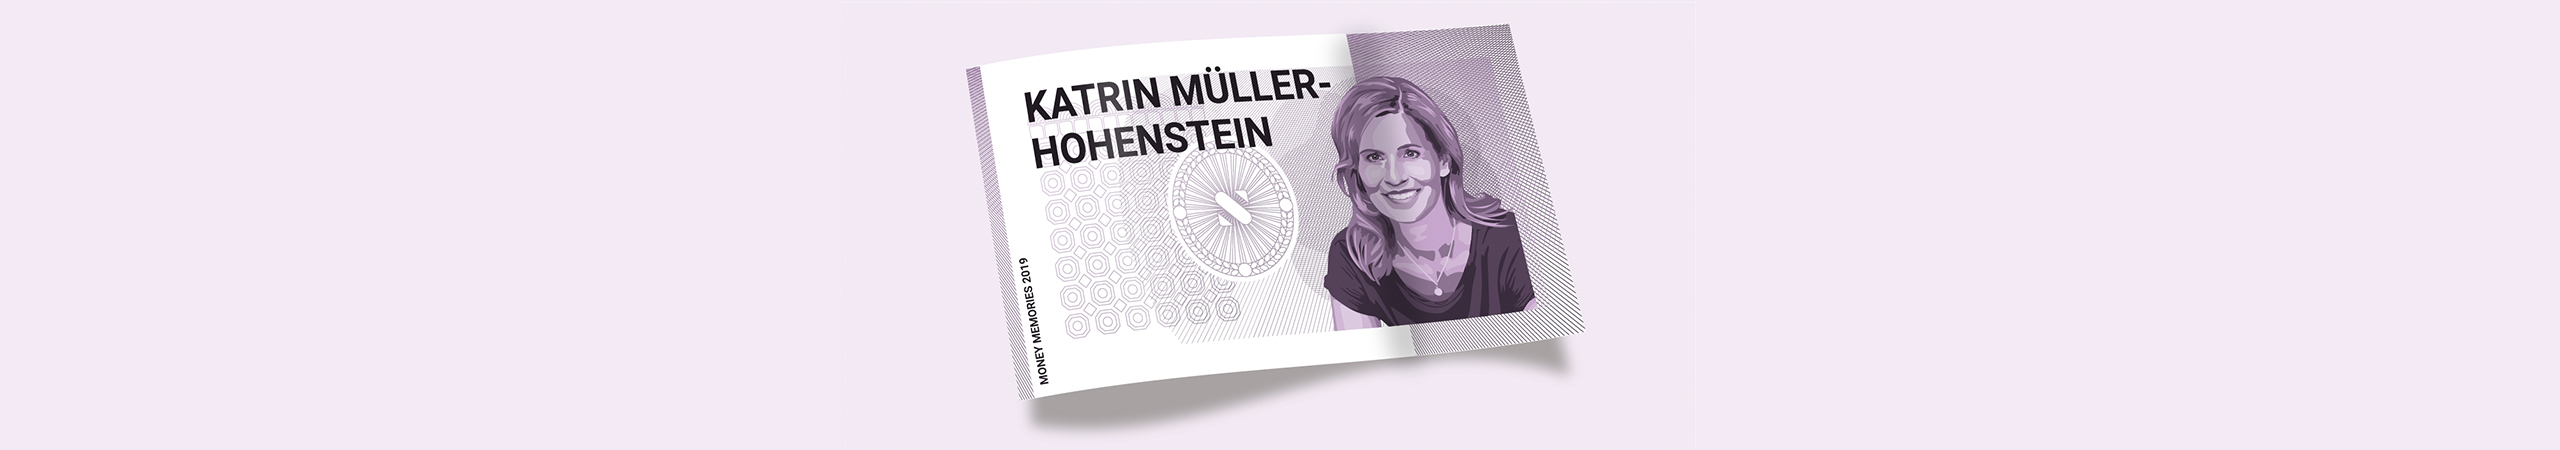 Katrin-Müller-Hohenstein-Geldschein